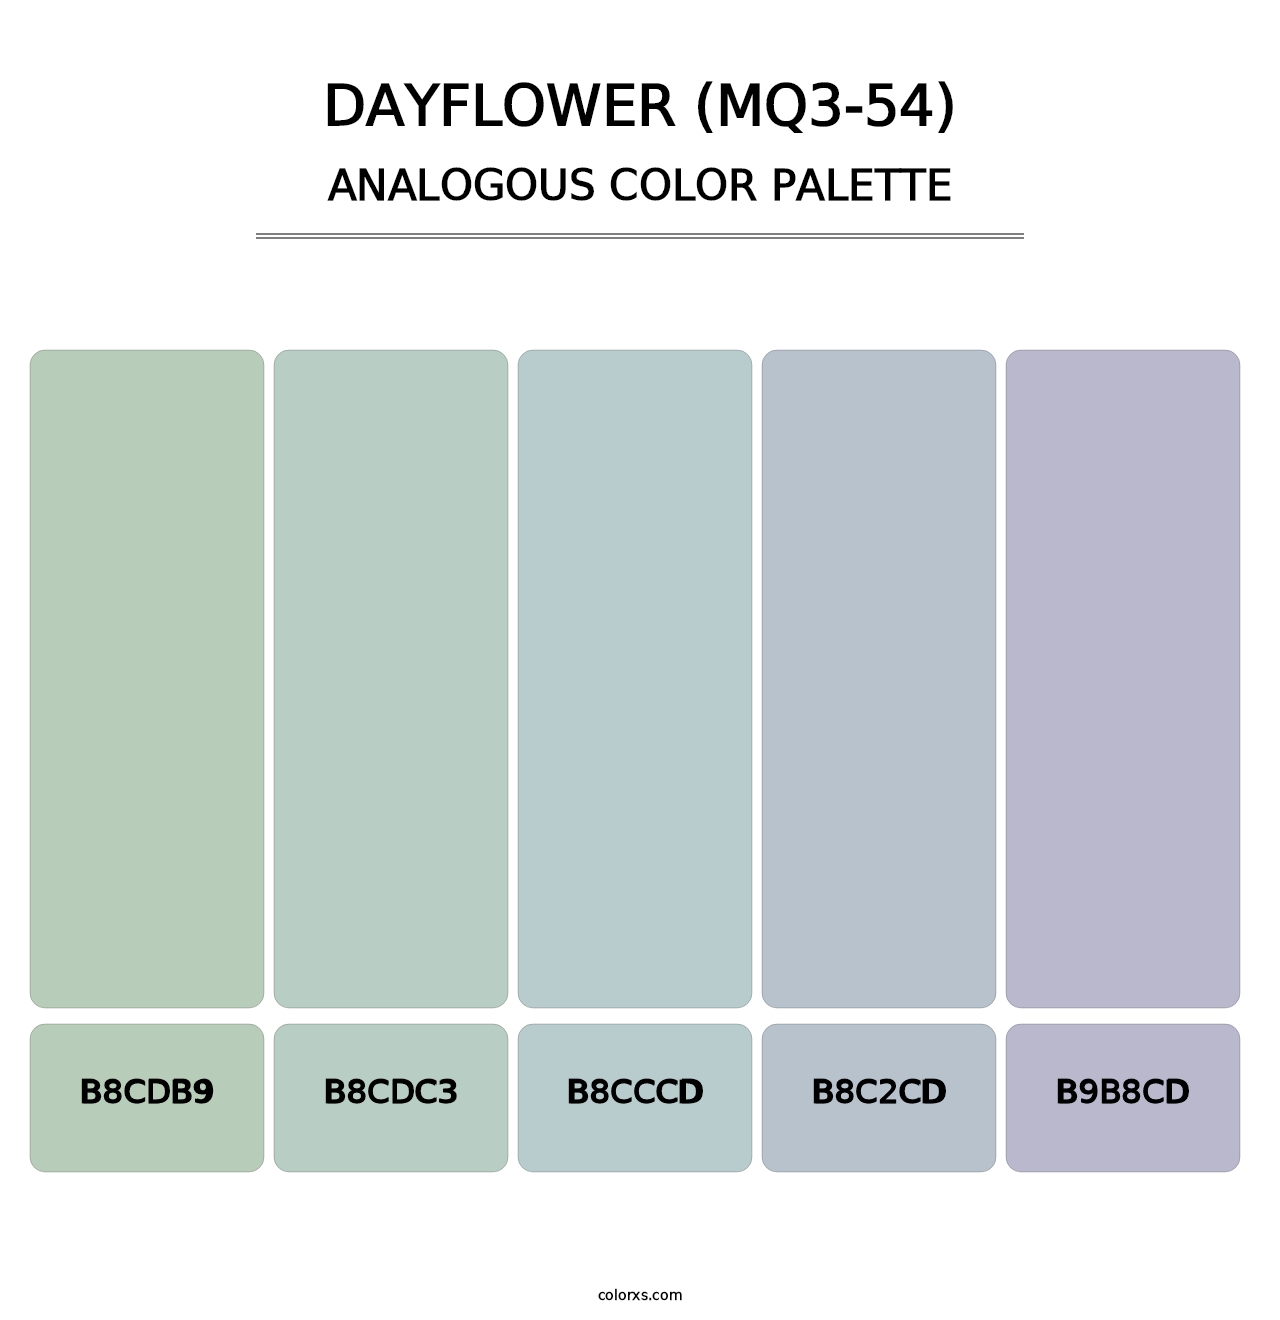 Dayflower (MQ3-54) - Analogous Color Palette